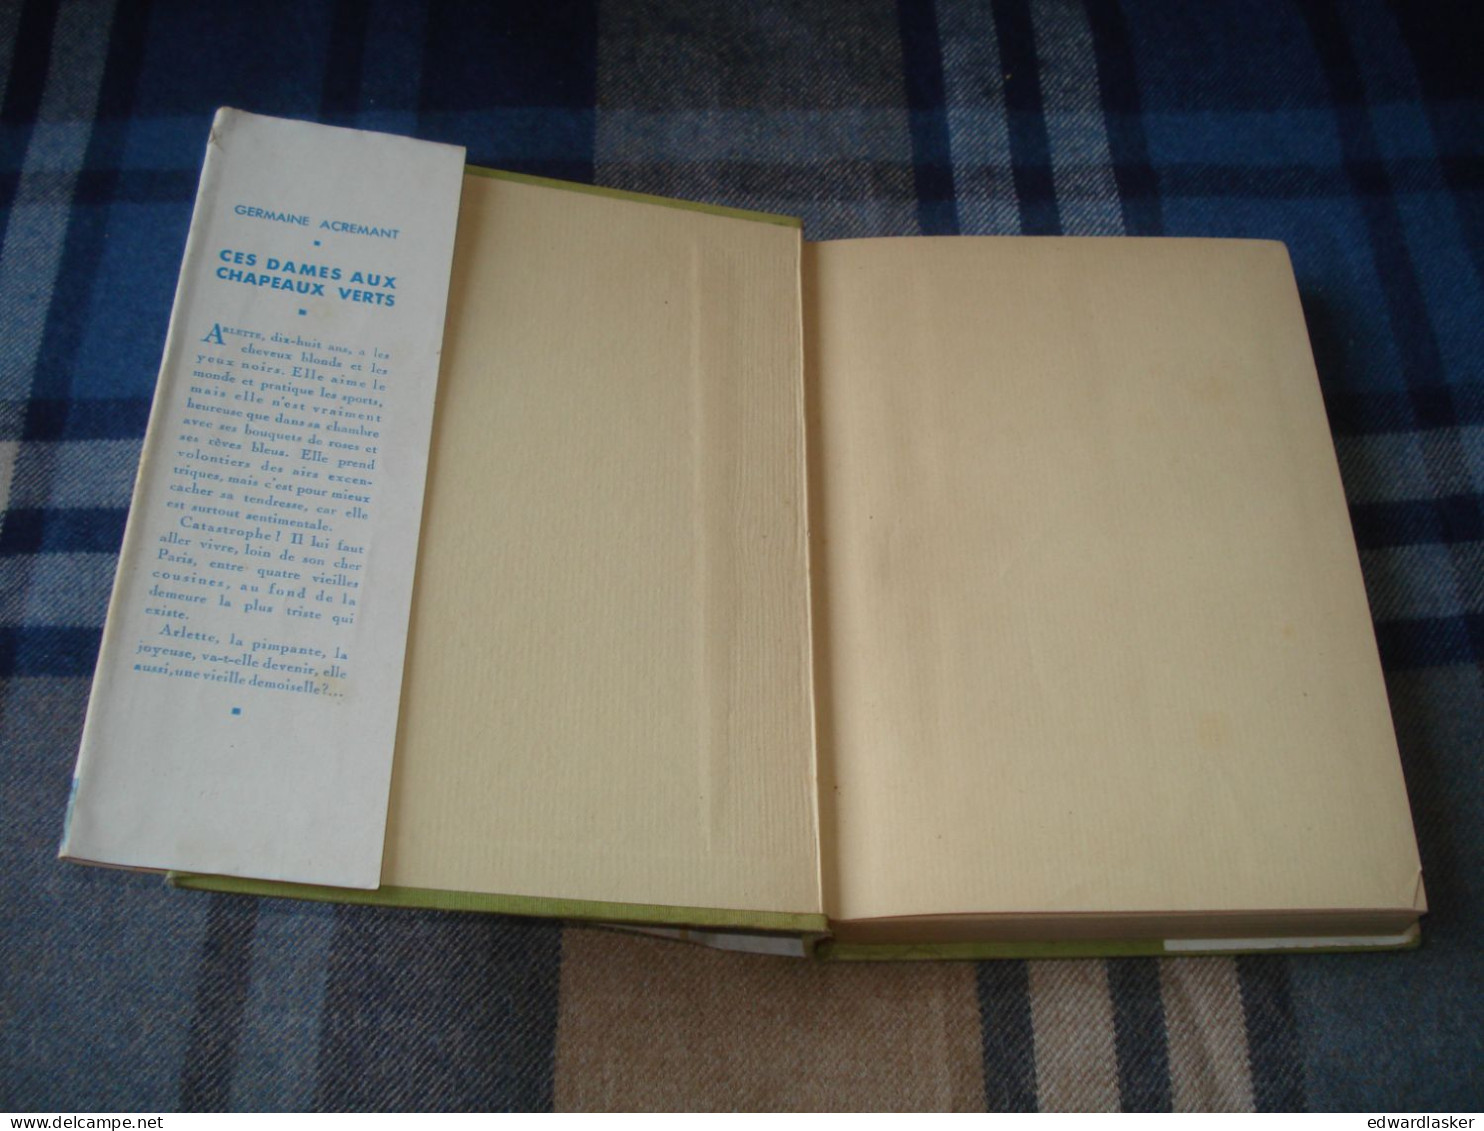 BIBLIOTHEQUE VERTE : Ces Dames Aux Chapeaux Verts /Germaine Acremant - Jaquette 1952 - Jacques Demachy - Bibliotheque Verte